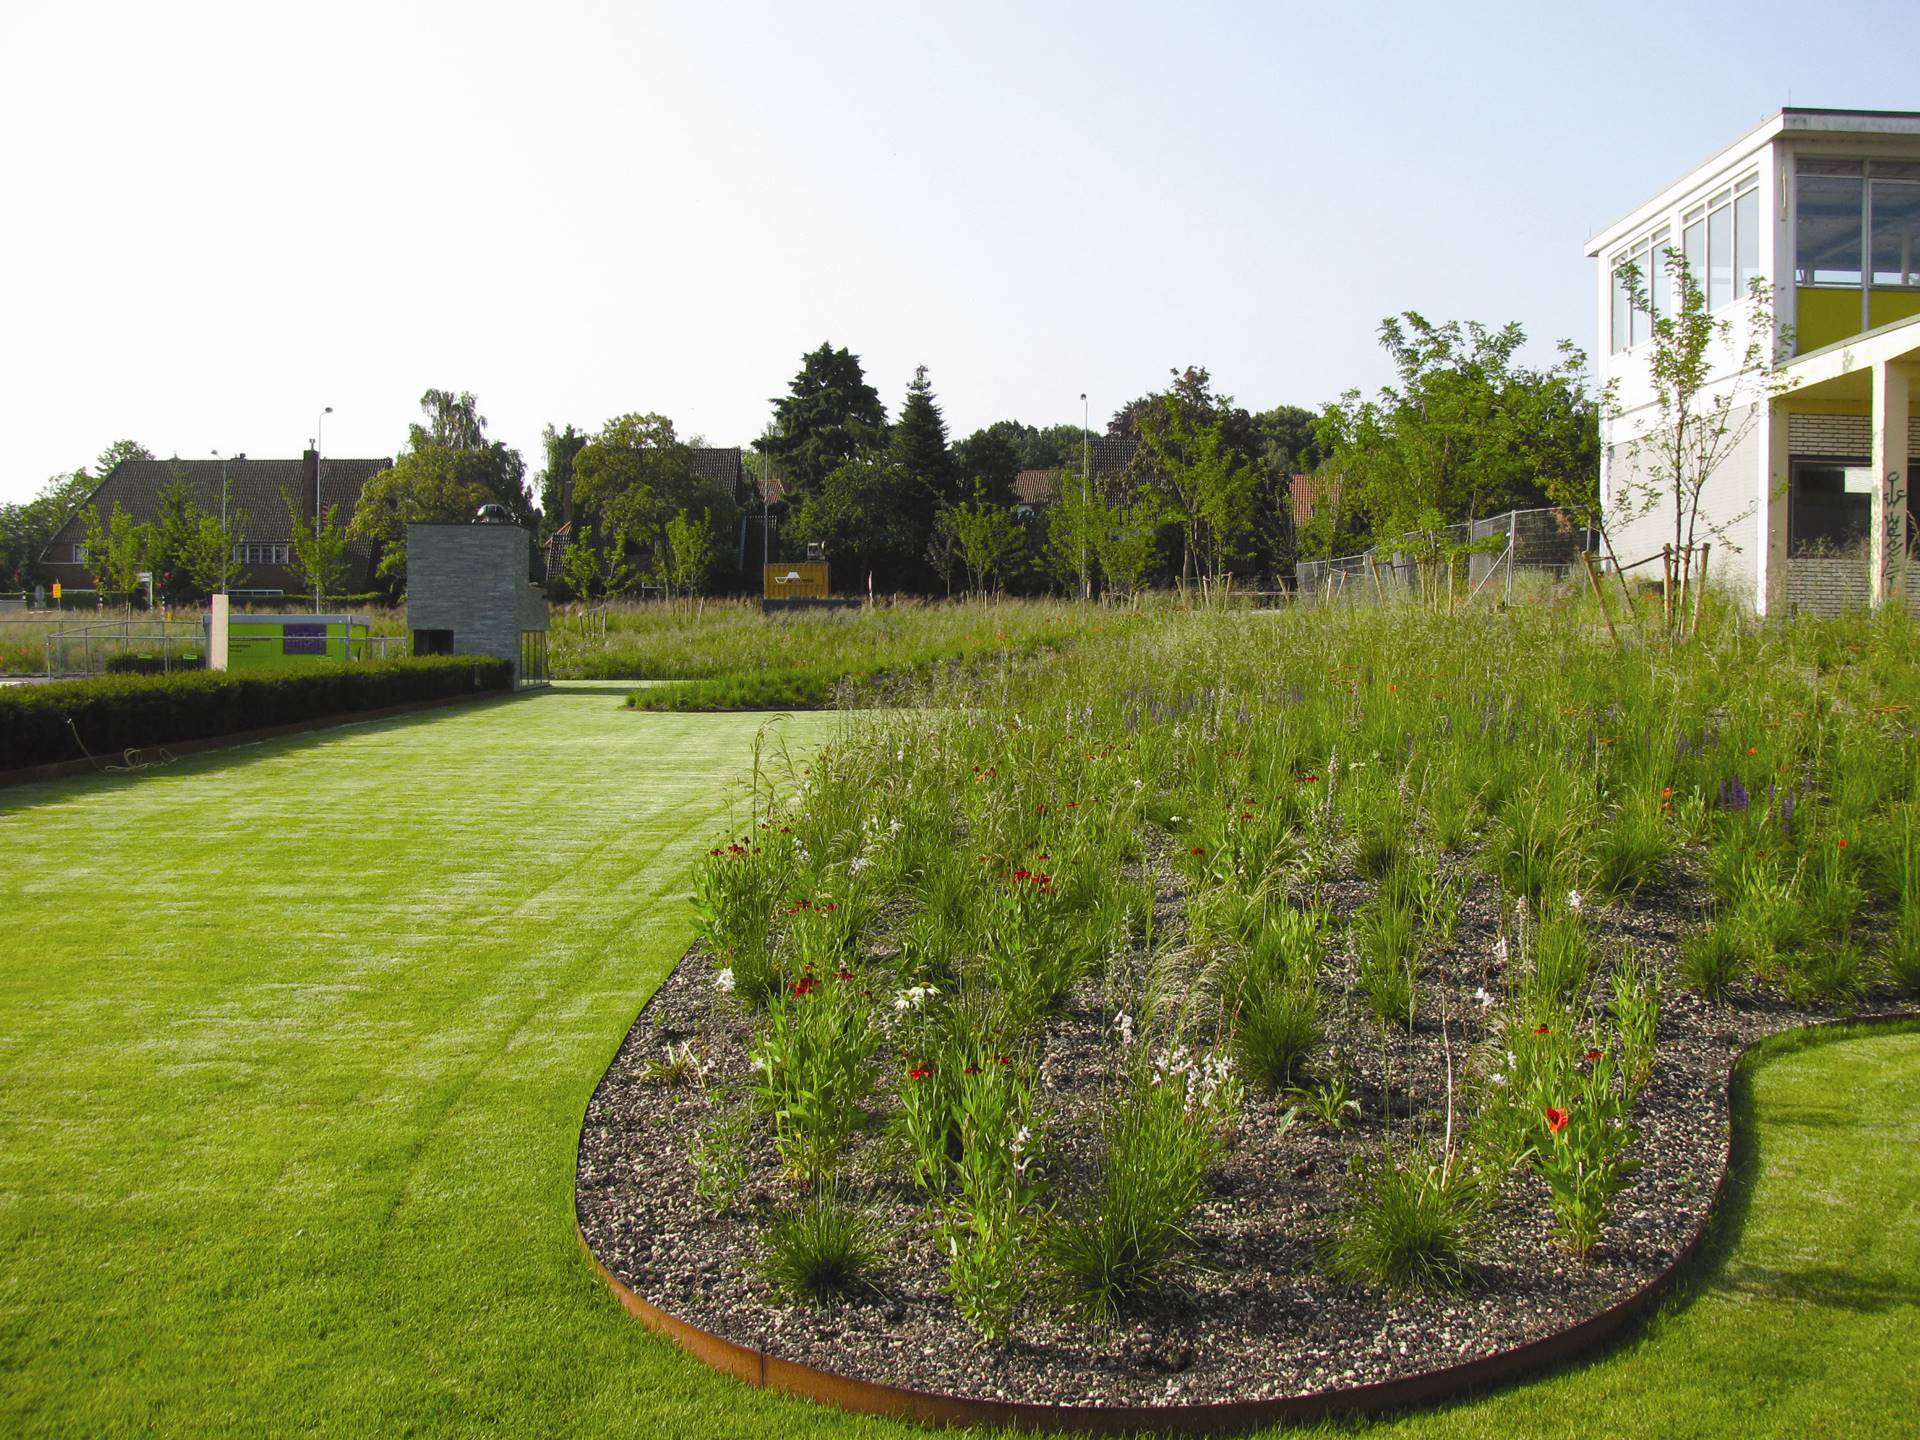 Nederlands Instituut voor Beeld en Geluid, Hilversum - Onderhoud van groen om de kwaliteit van de tuinuitstraling hoog te houden